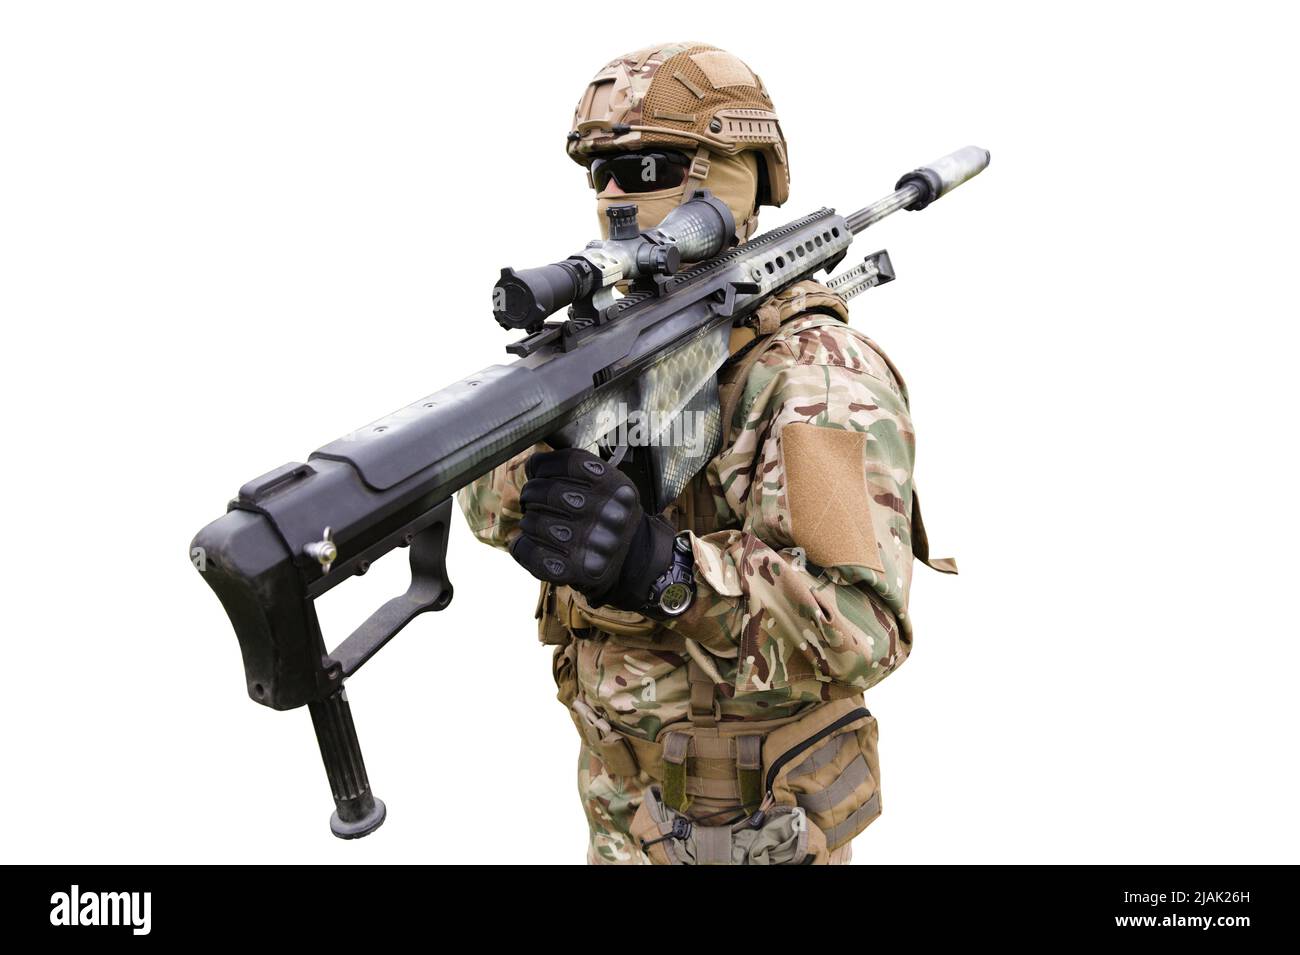 Soldat armé des forces spéciales avec fusil de sniper, isolé sur fond blanc Banque D'Images